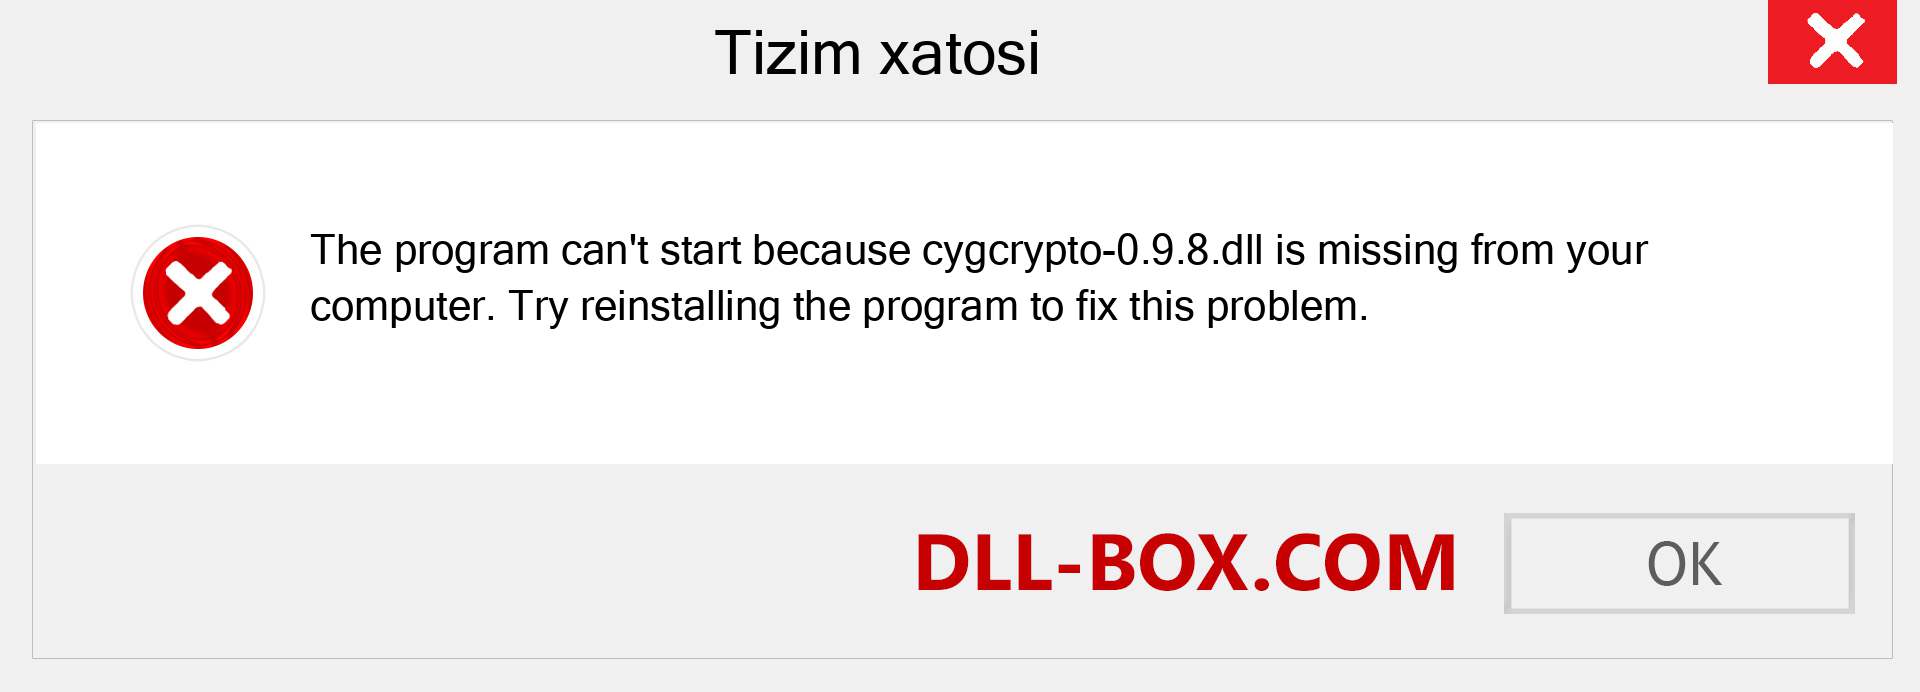 cygcrypto-0.9.8.dll fayli yo'qolganmi?. Windows 7, 8, 10 uchun yuklab olish - Windowsda cygcrypto-0.9.8 dll etishmayotgan xatoni tuzating, rasmlar, rasmlar